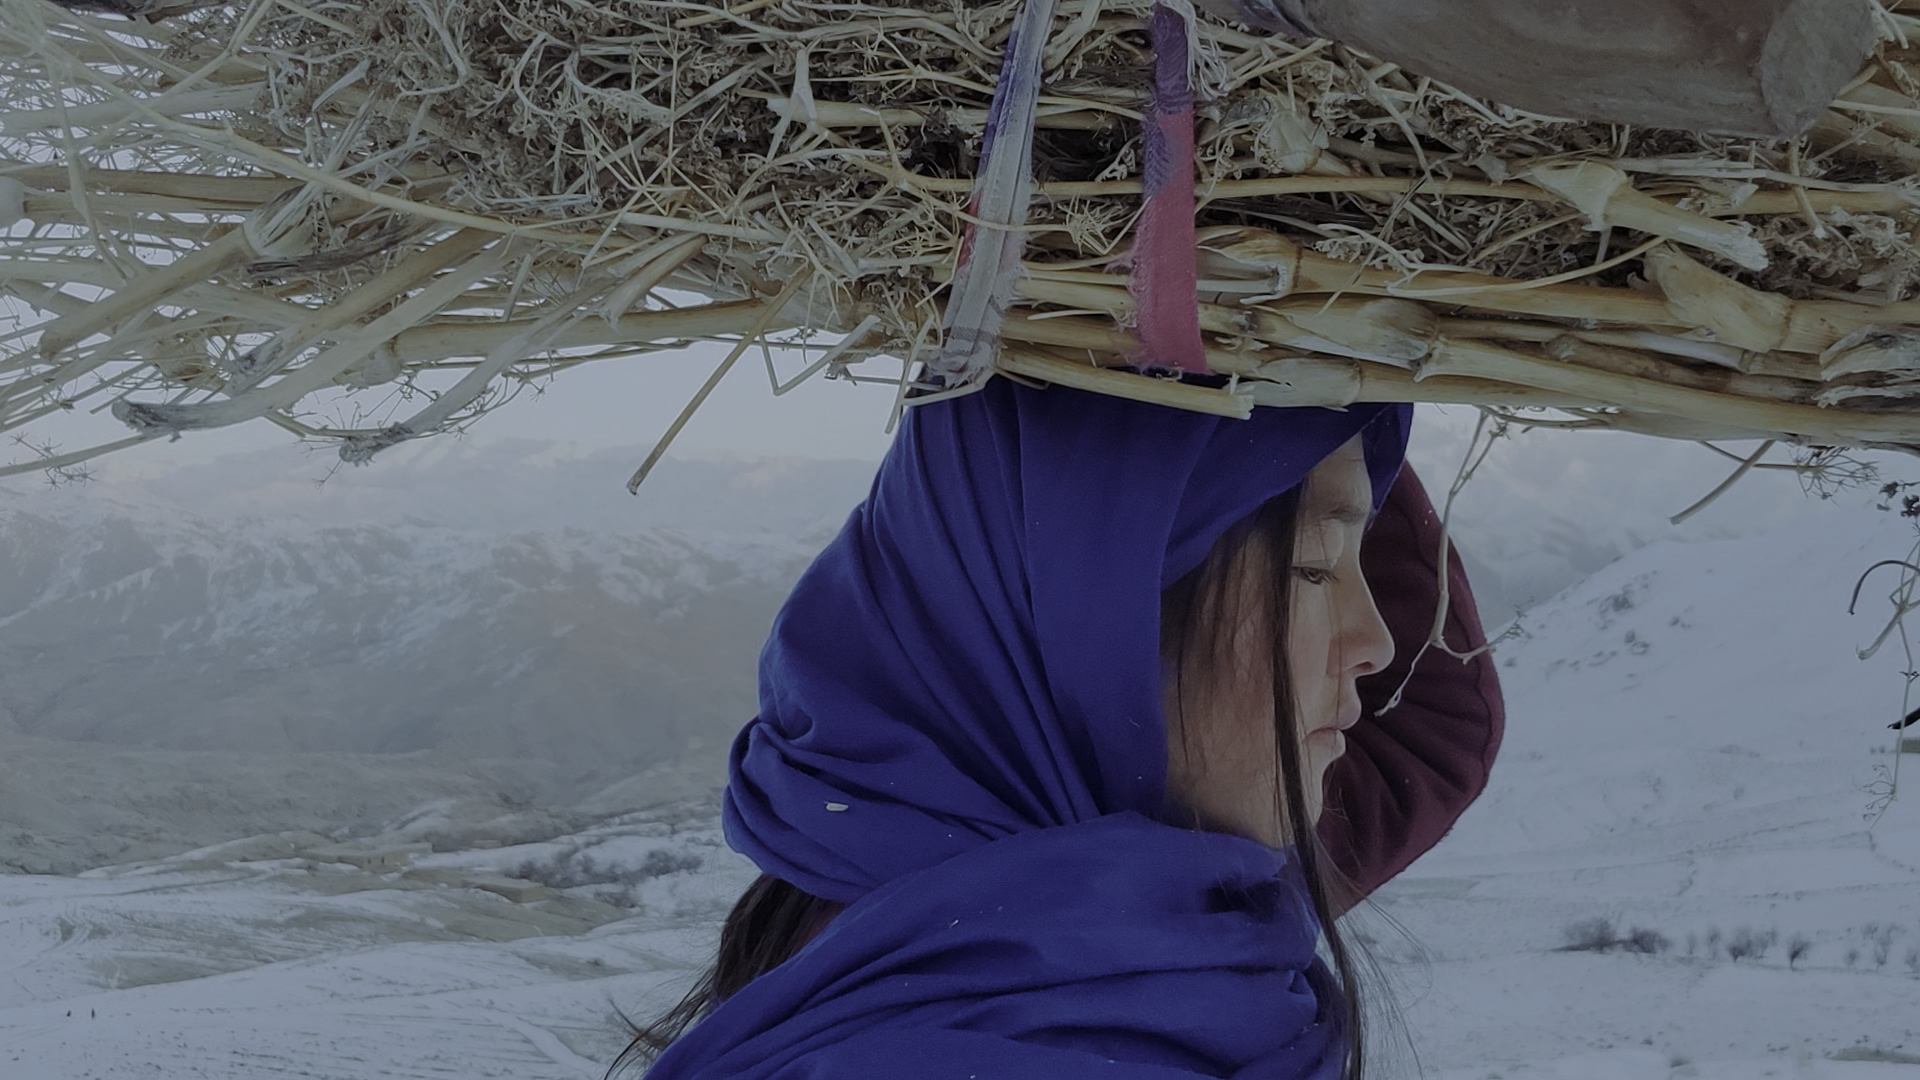 Eine Frau in einem blauen Gewand geht mit einem Bündel Reisig durch eine verschneite Landschaft.